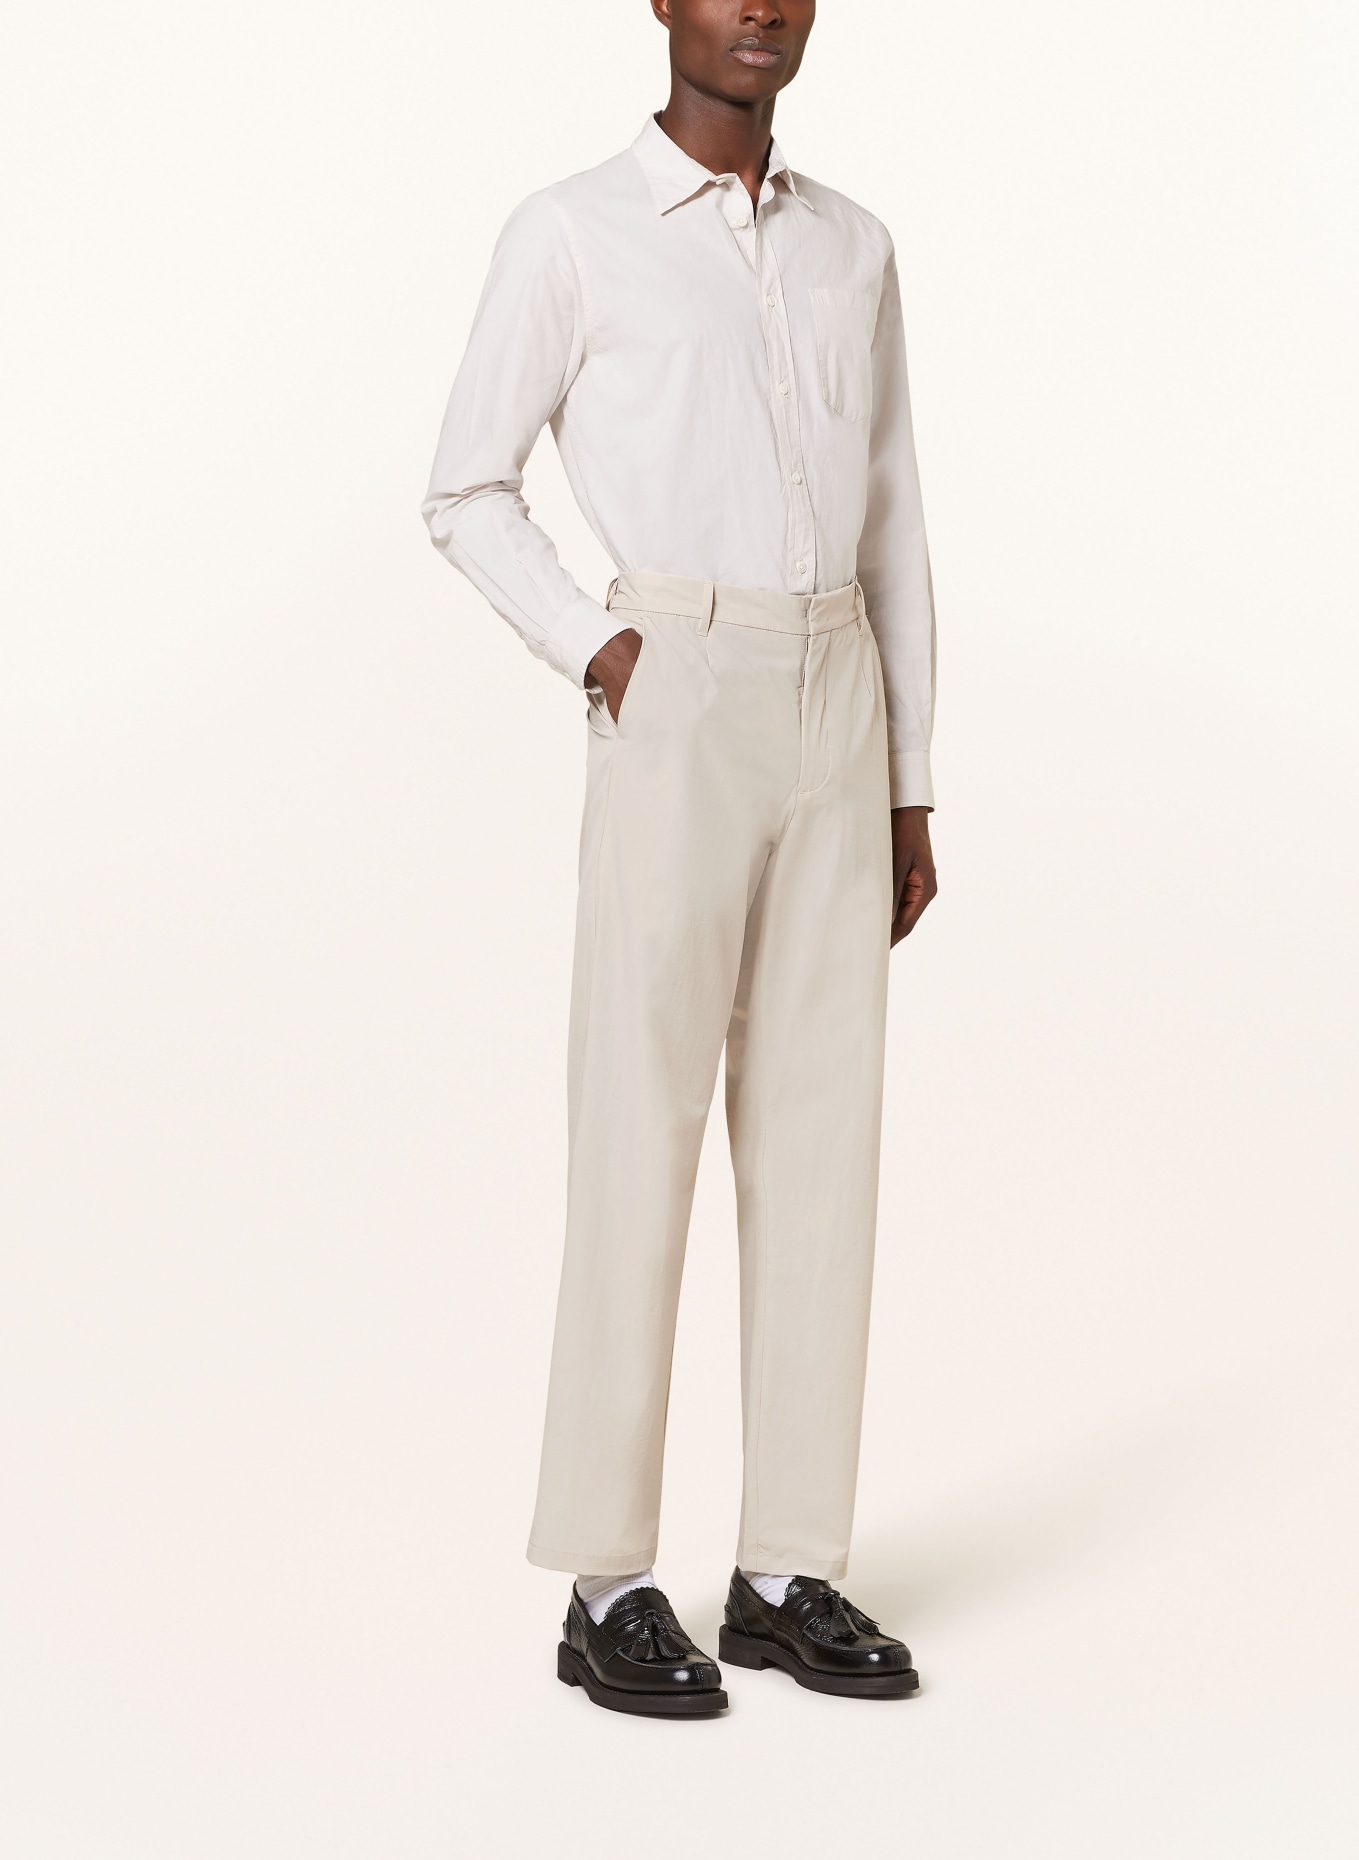 NORSE PROJECTS Suit trousers AAREN regular fit, Color: 0920 Light Khaki (Image 3)